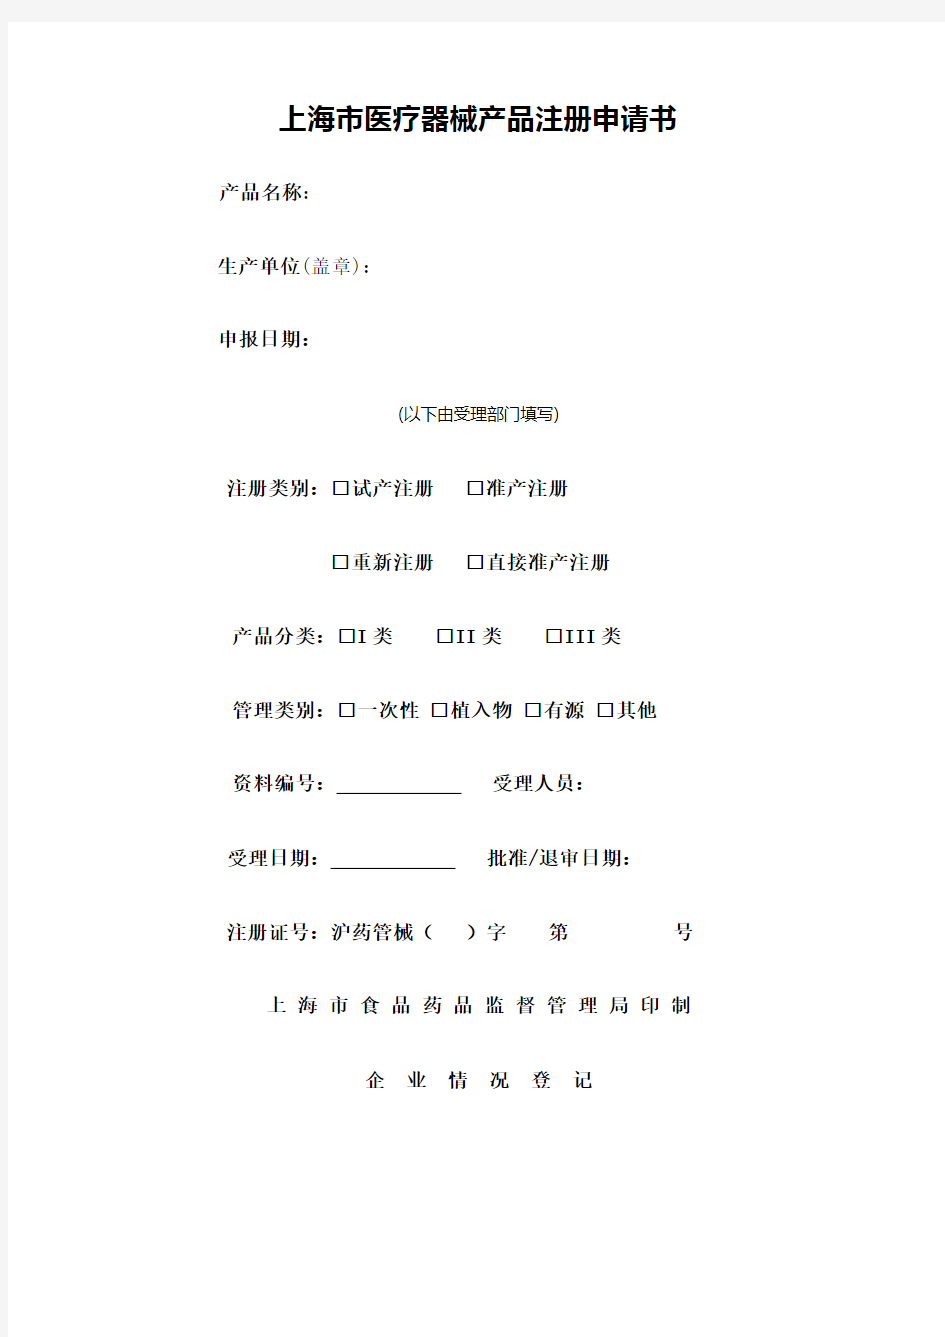 上海医疗器械产品注册申请书